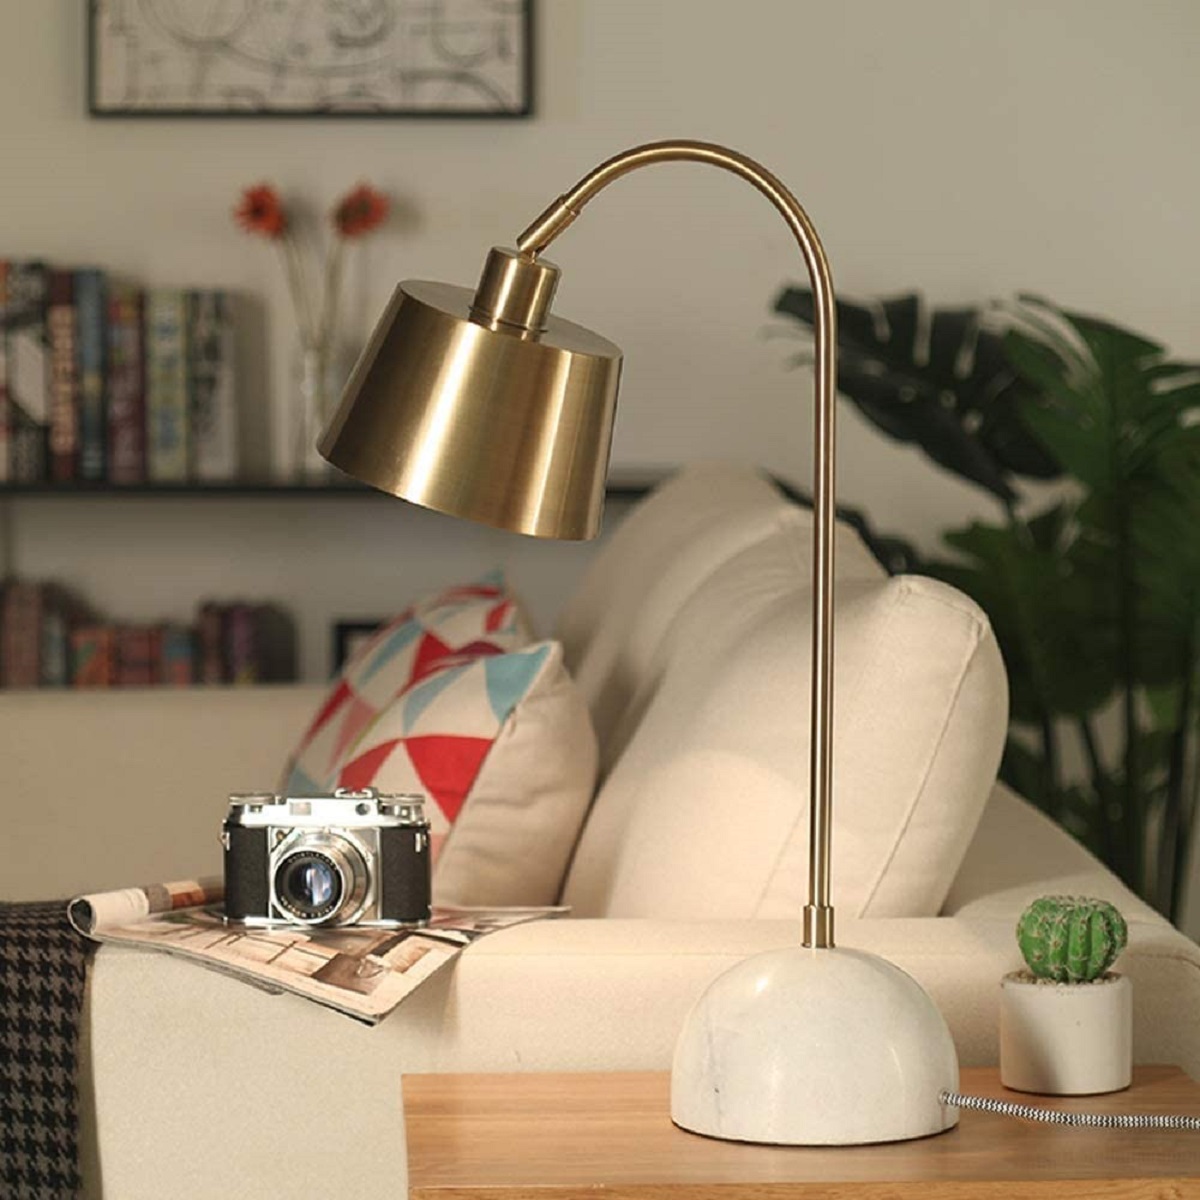 Kohree Lampe de chevet USB, E27 Lampe de Table Dimmable avec Port